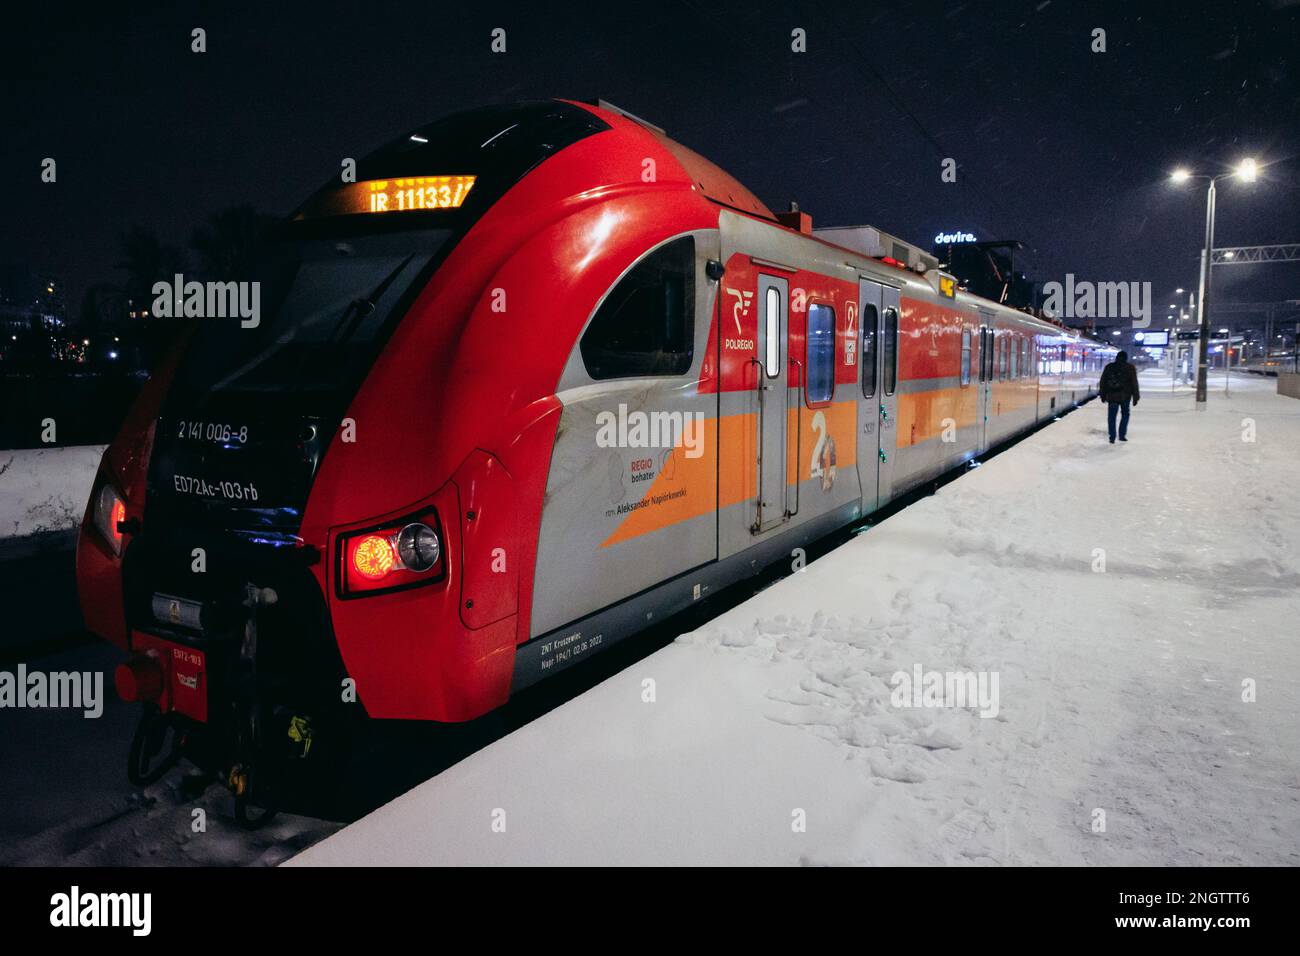 Polregio-Zug am Warszawa-Bahnhof Glowna in Warschau, Hauptstadt von Polen Stockfoto